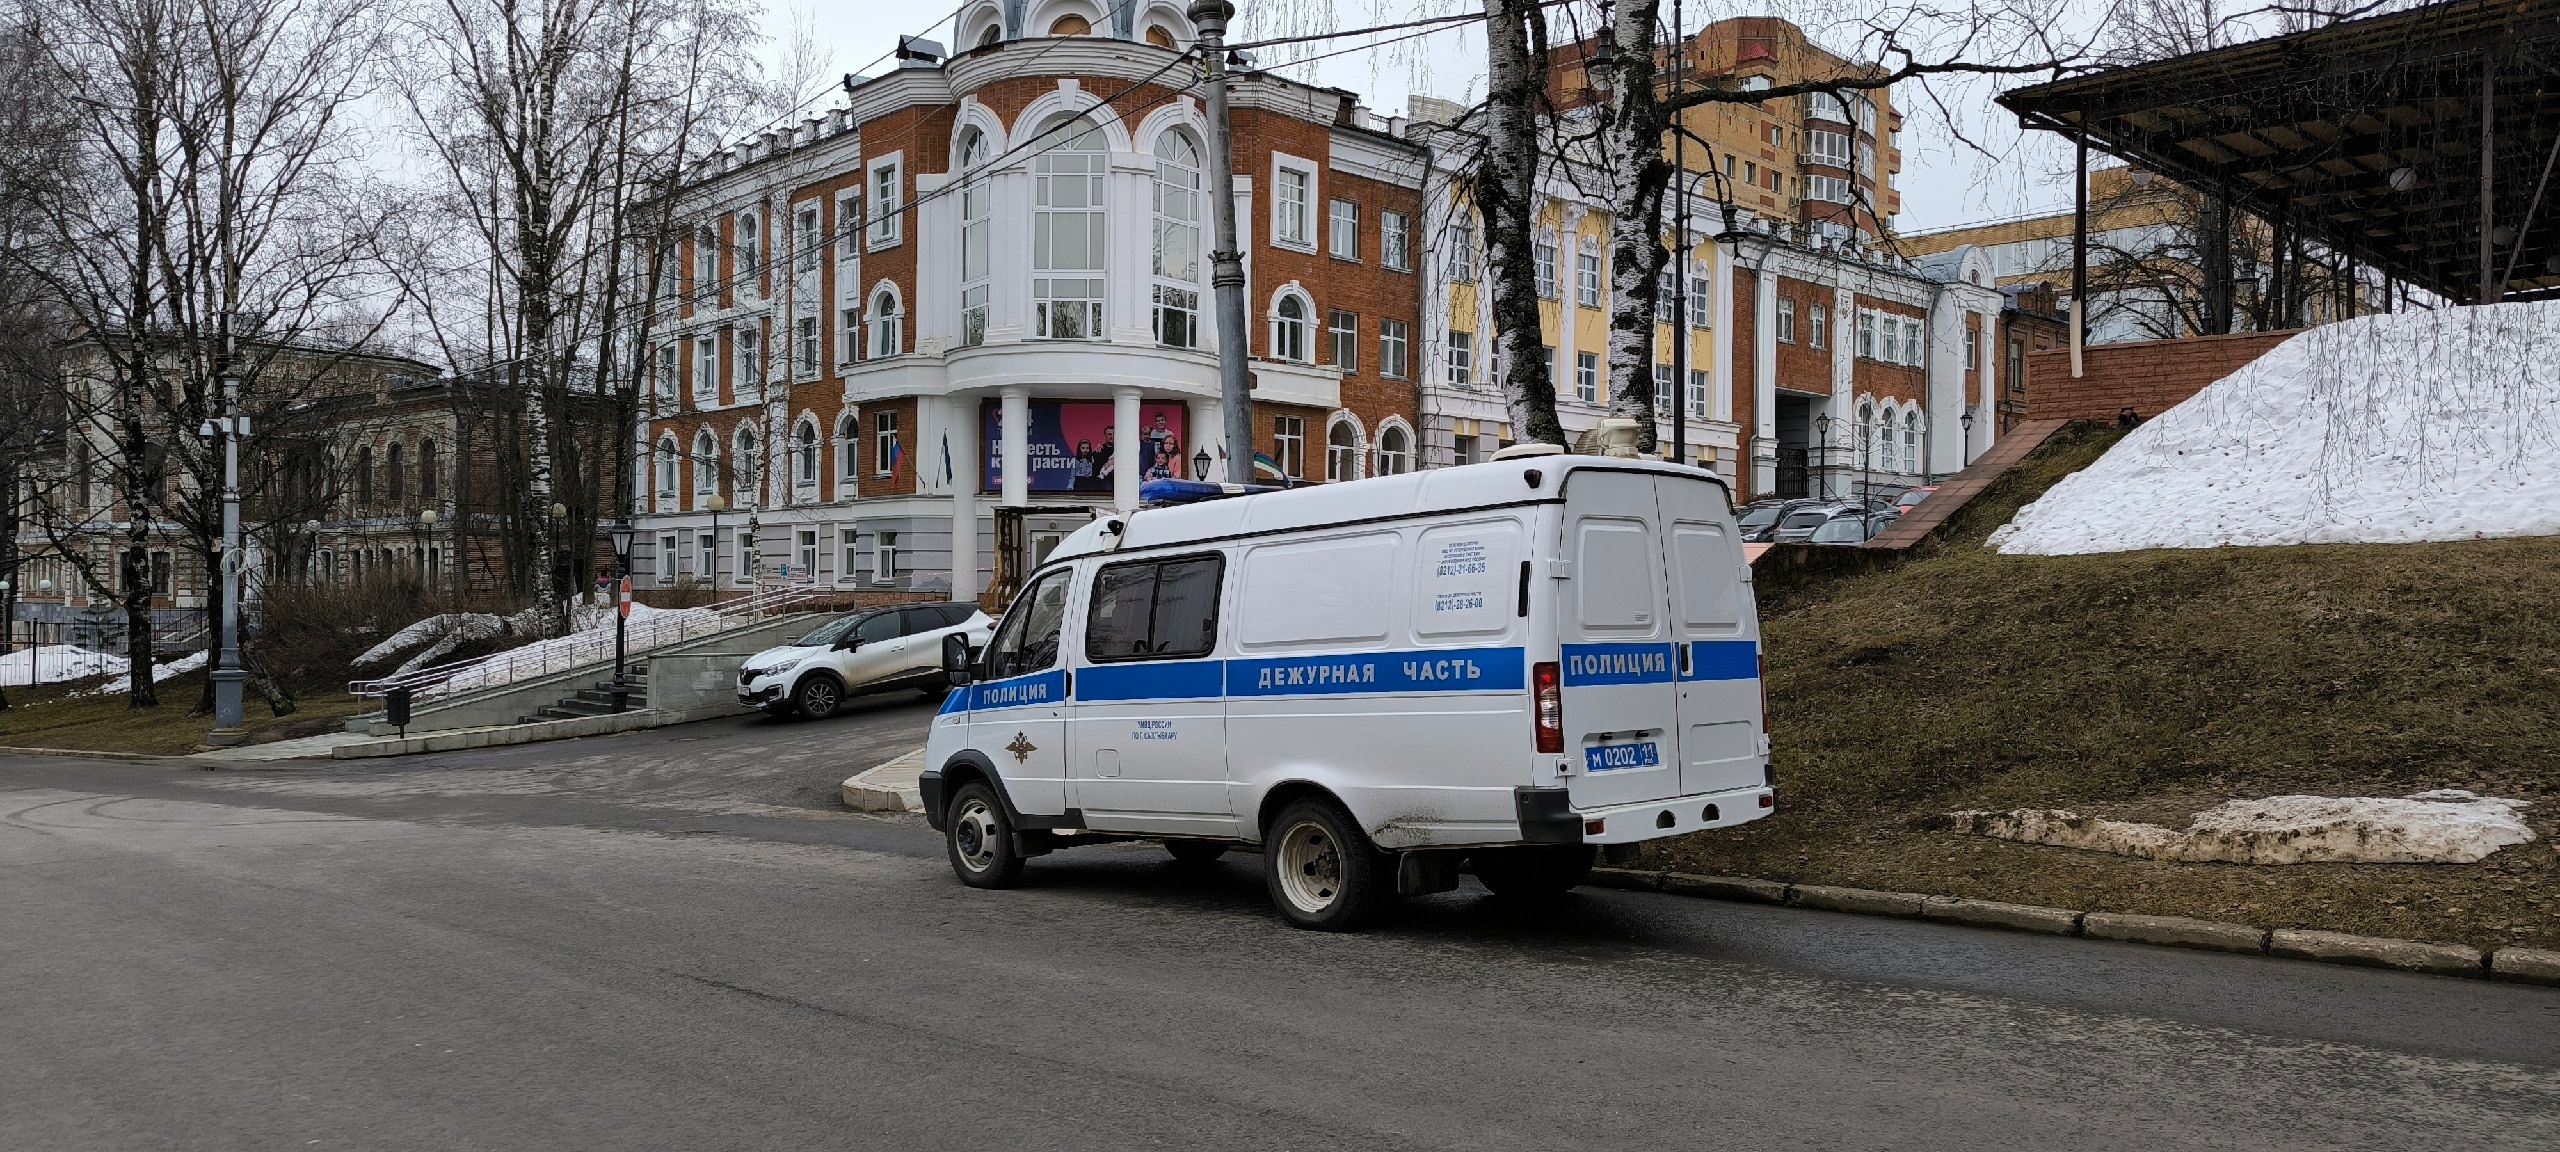 Хозяйка квартиры в Воркуте фиктивно прописала 10 жителей Киргизии